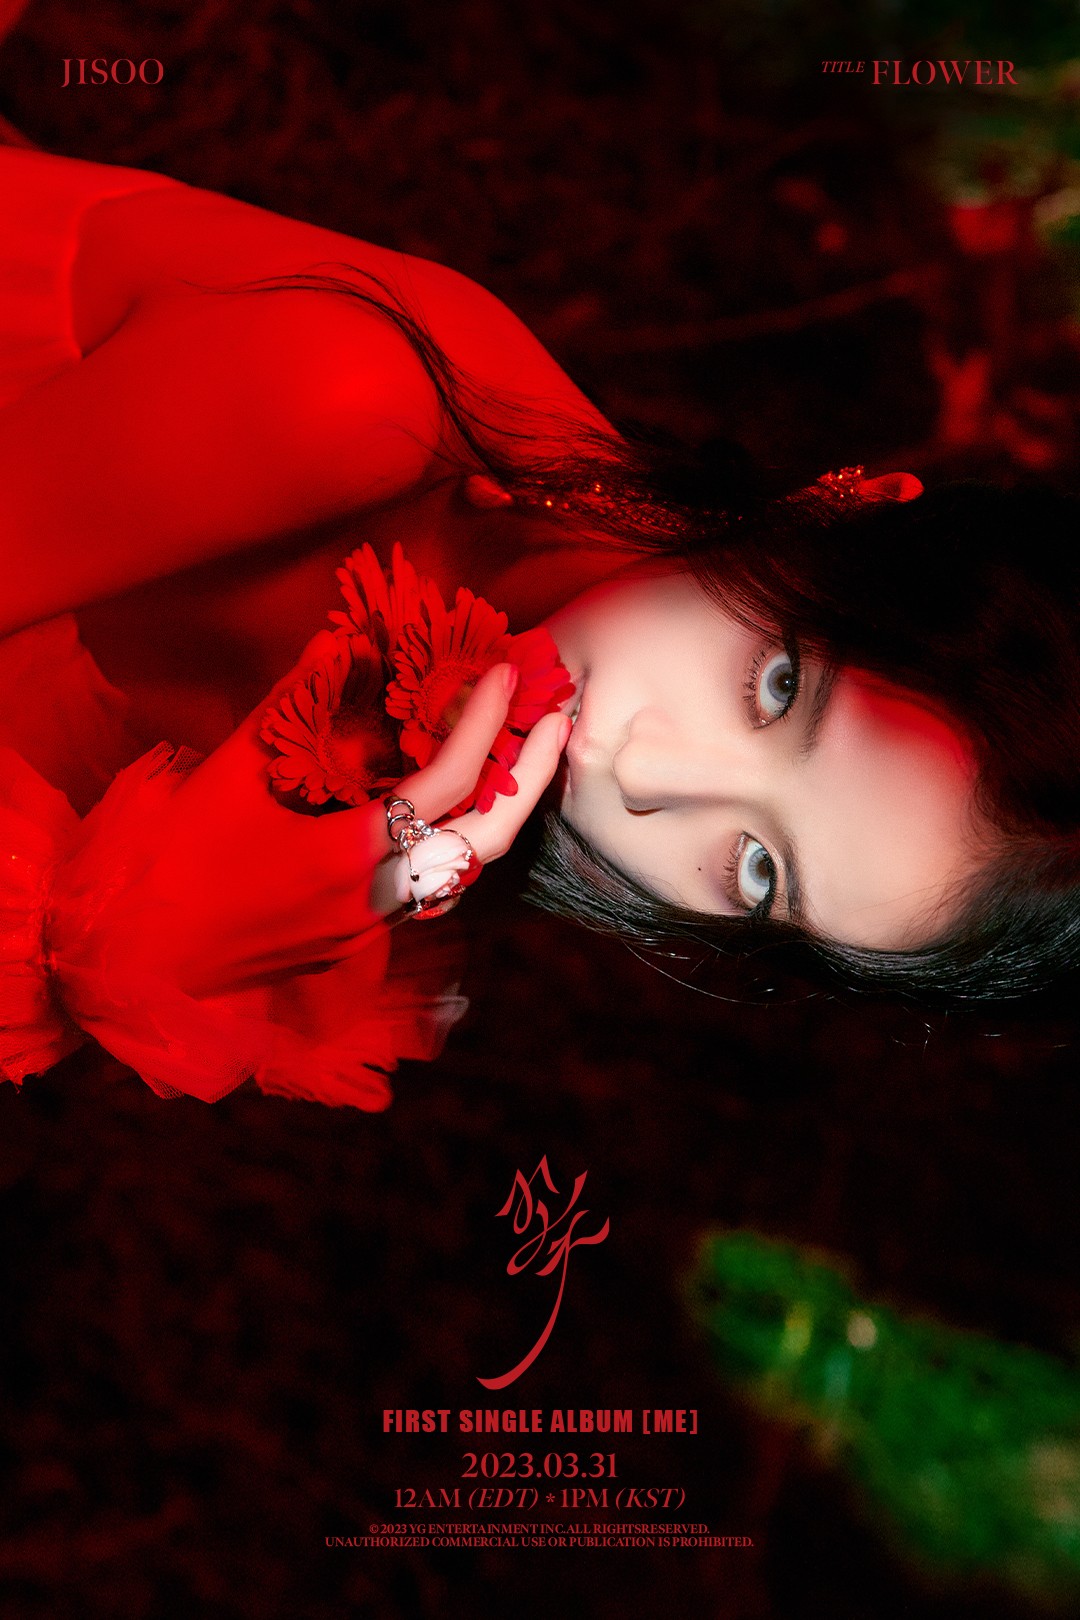 Imagem de divulgação do primeiro single álbum solo de Jisoo, do BLACKPINK, lançado em 31 de março de 2023 — Foto: Divulgação / YG